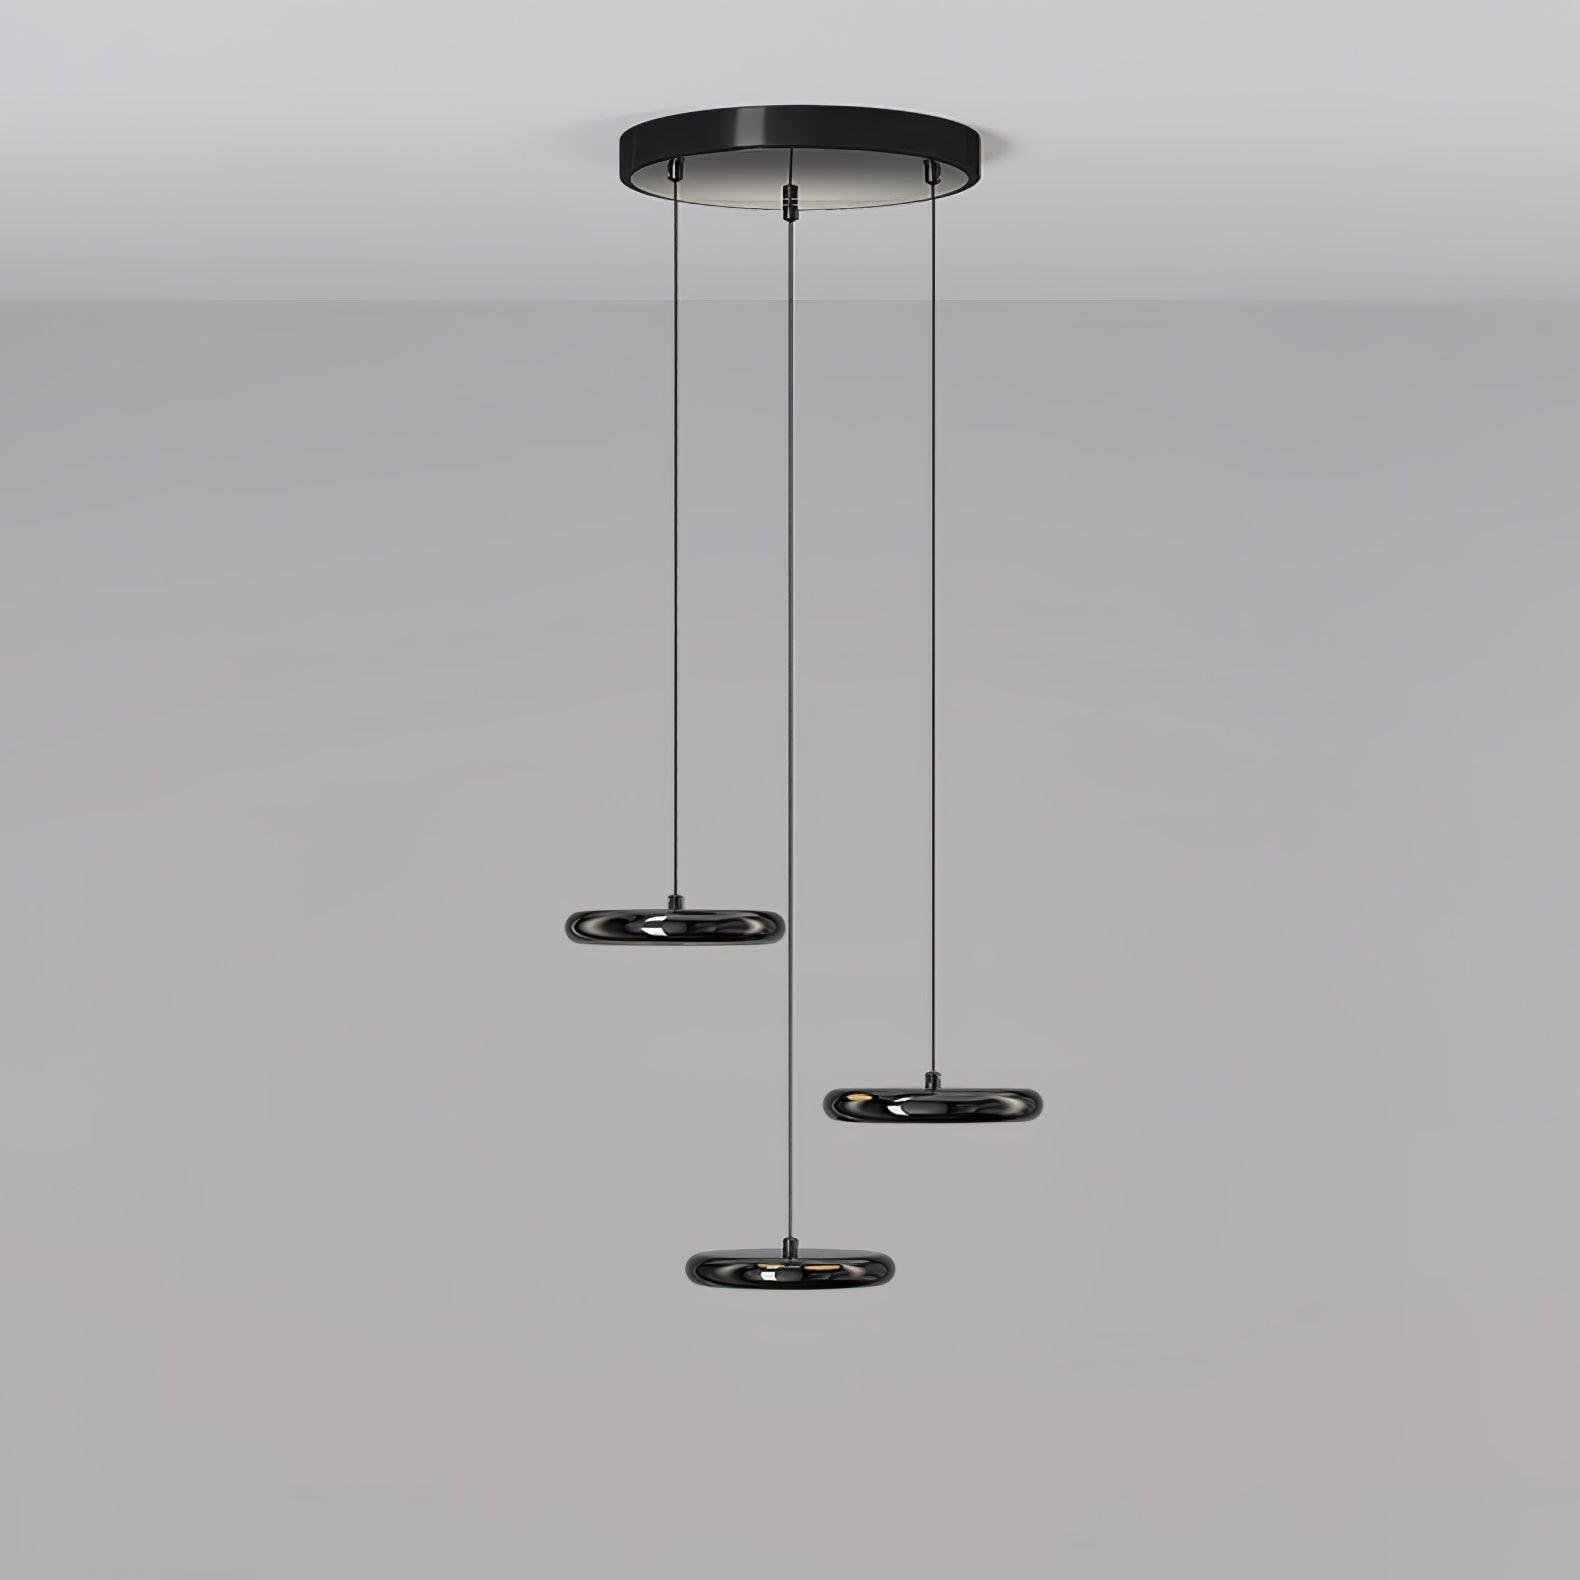 Black Bilancella Suspension Lamp - Cool Light, 18.5" Diameter x 59" Height (47cm Dia x 150cm H)